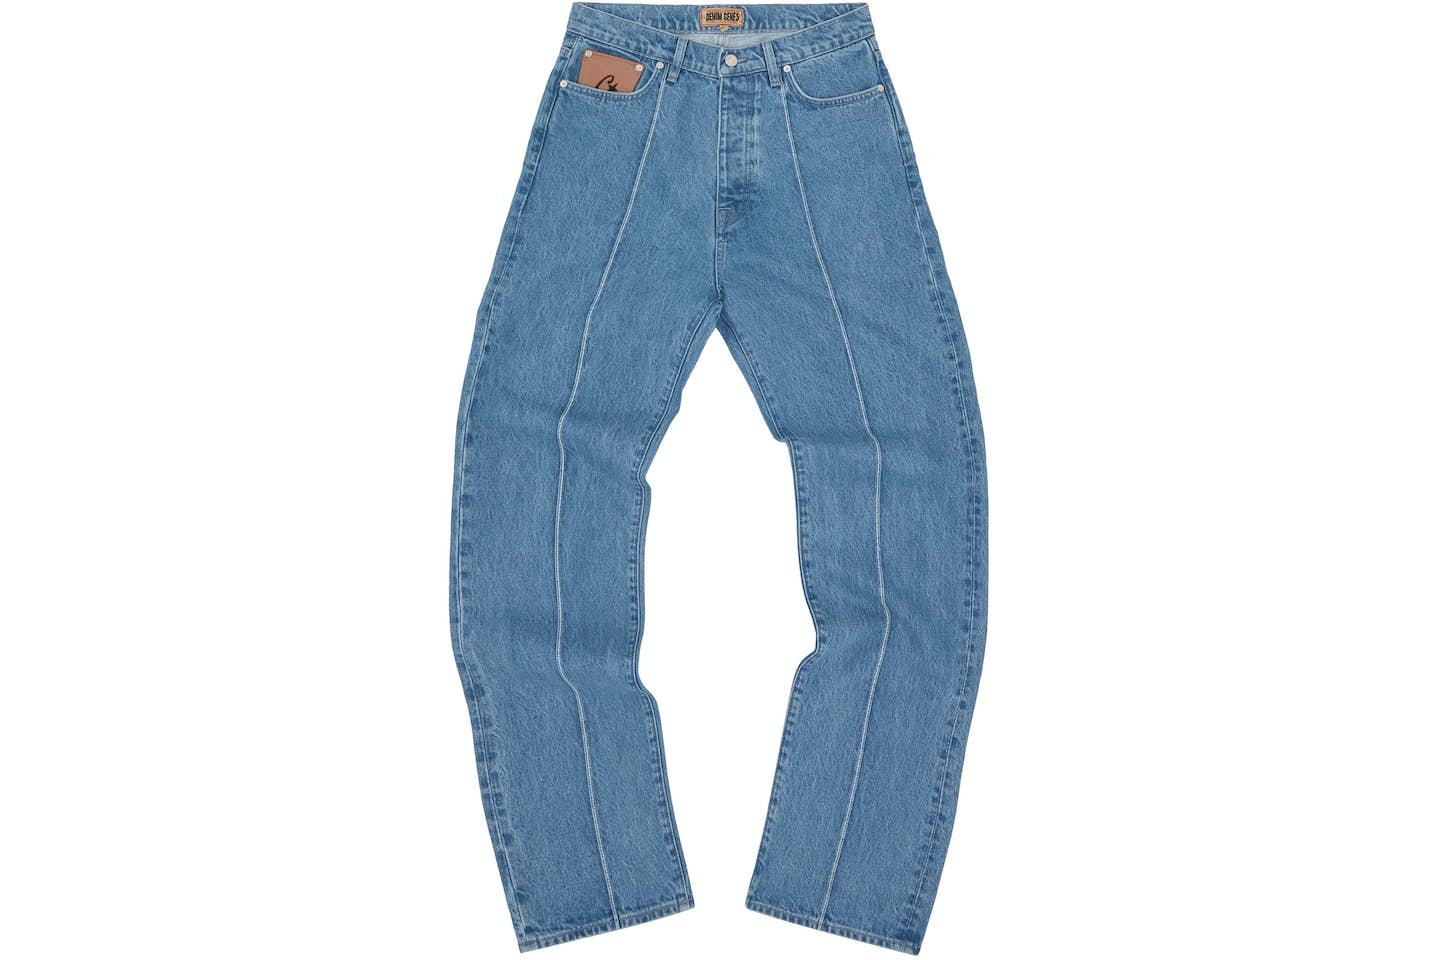 Corteiz C-Star Denim Jeans
Blue